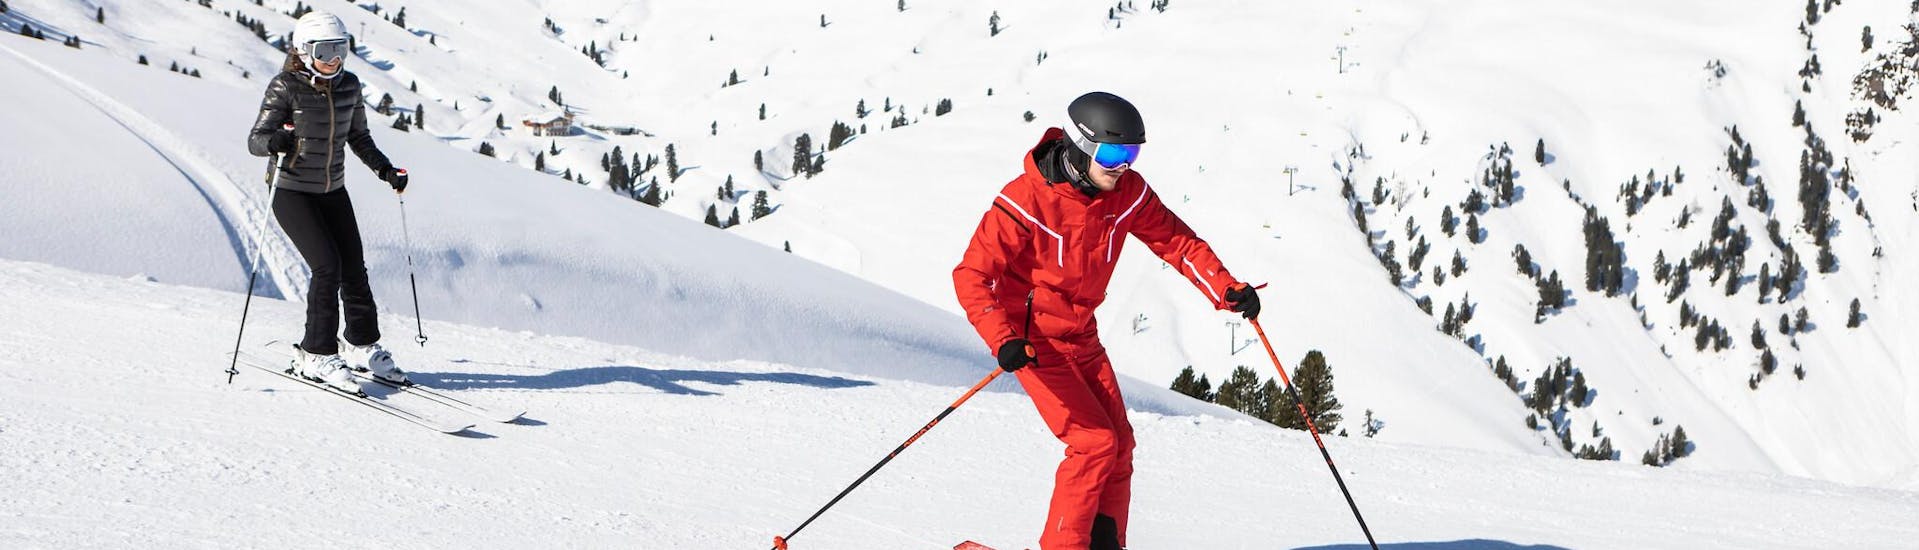 Un adulto con su profesor de esqui durante una clase de esqui para adultos.